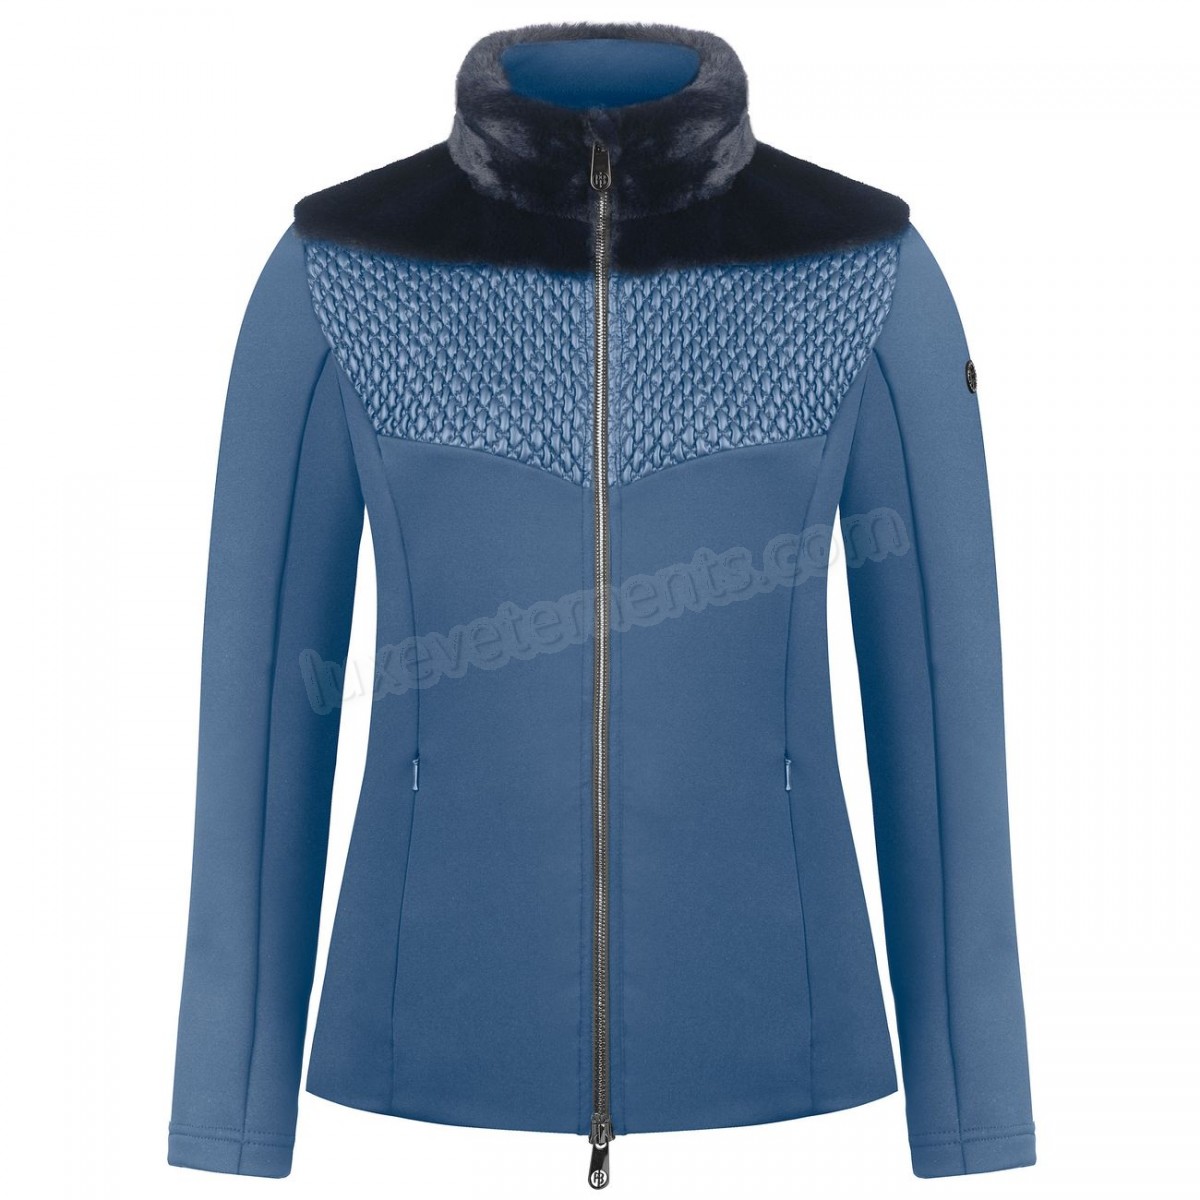 Poivre Blanc-Sports d'hiver femme POIVRE BLANC Veste En Polaire Poivre Blanc Hybrid Stretch Fleece Jacket 1600 Multico Blue Femme Vente en ligne - -3